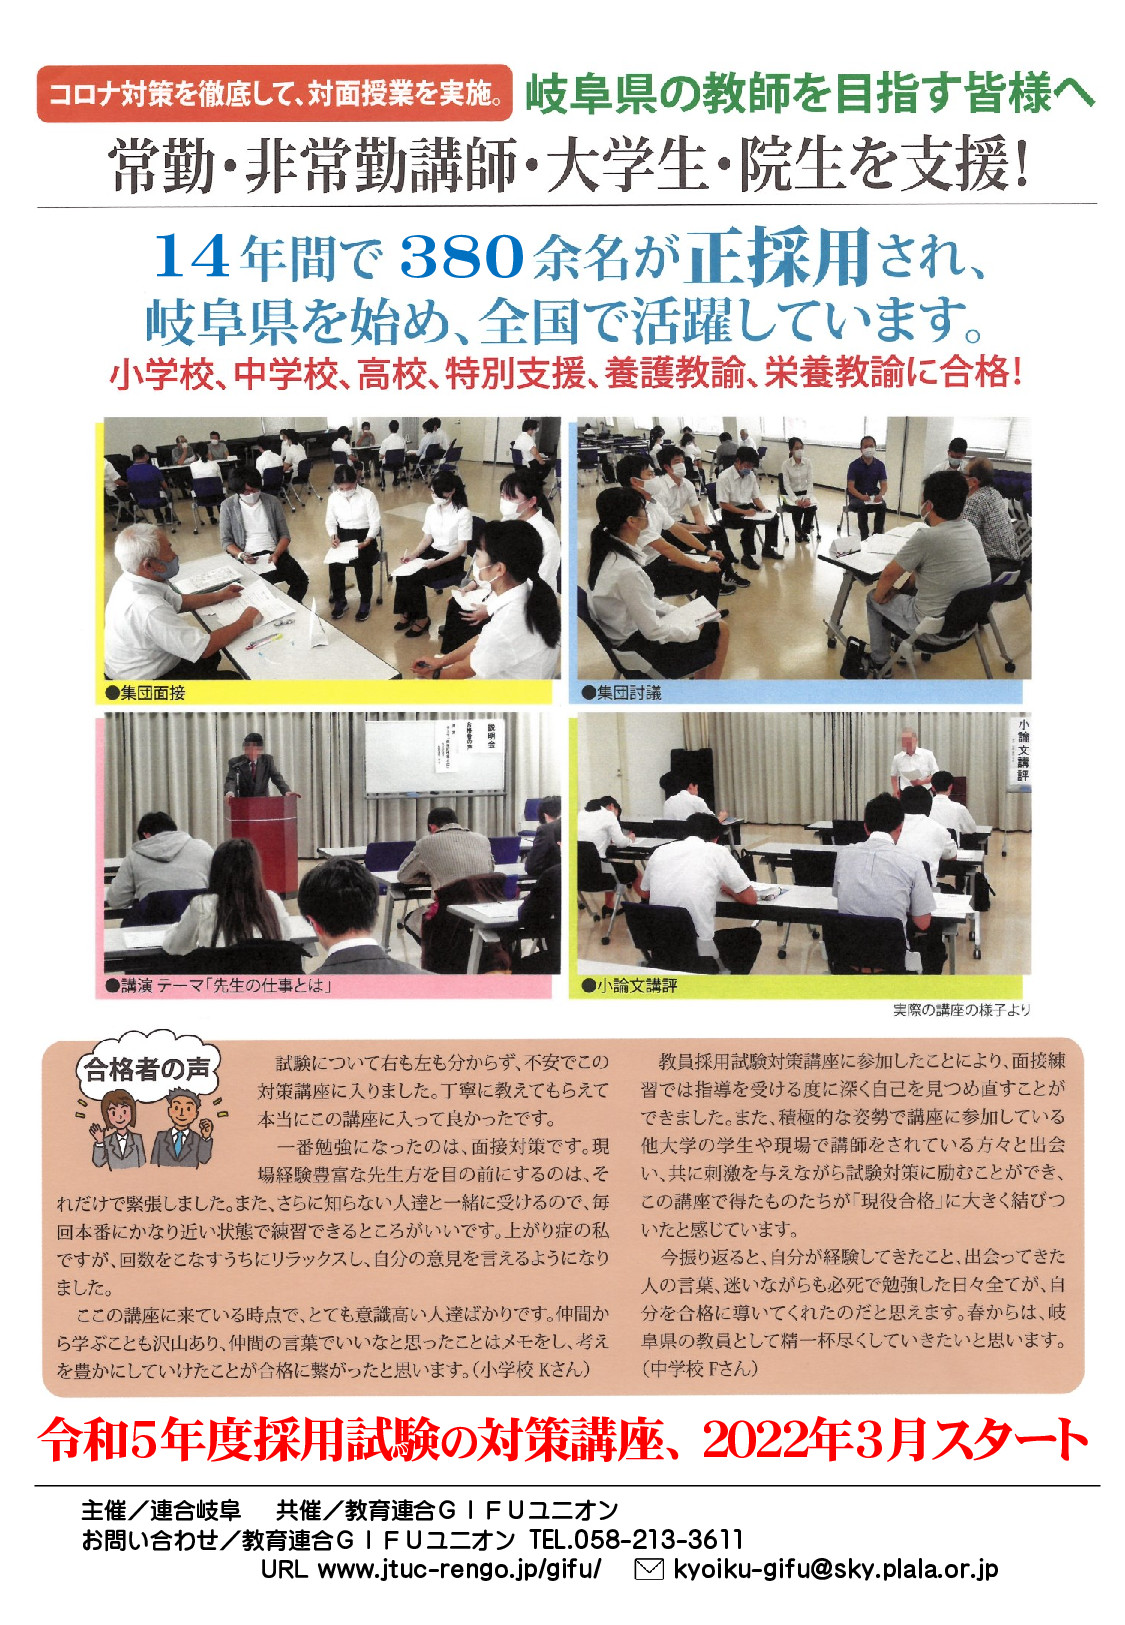 「岐阜県教員採用試験対策講座〈岐阜教師塾〉」を３月から開講します。